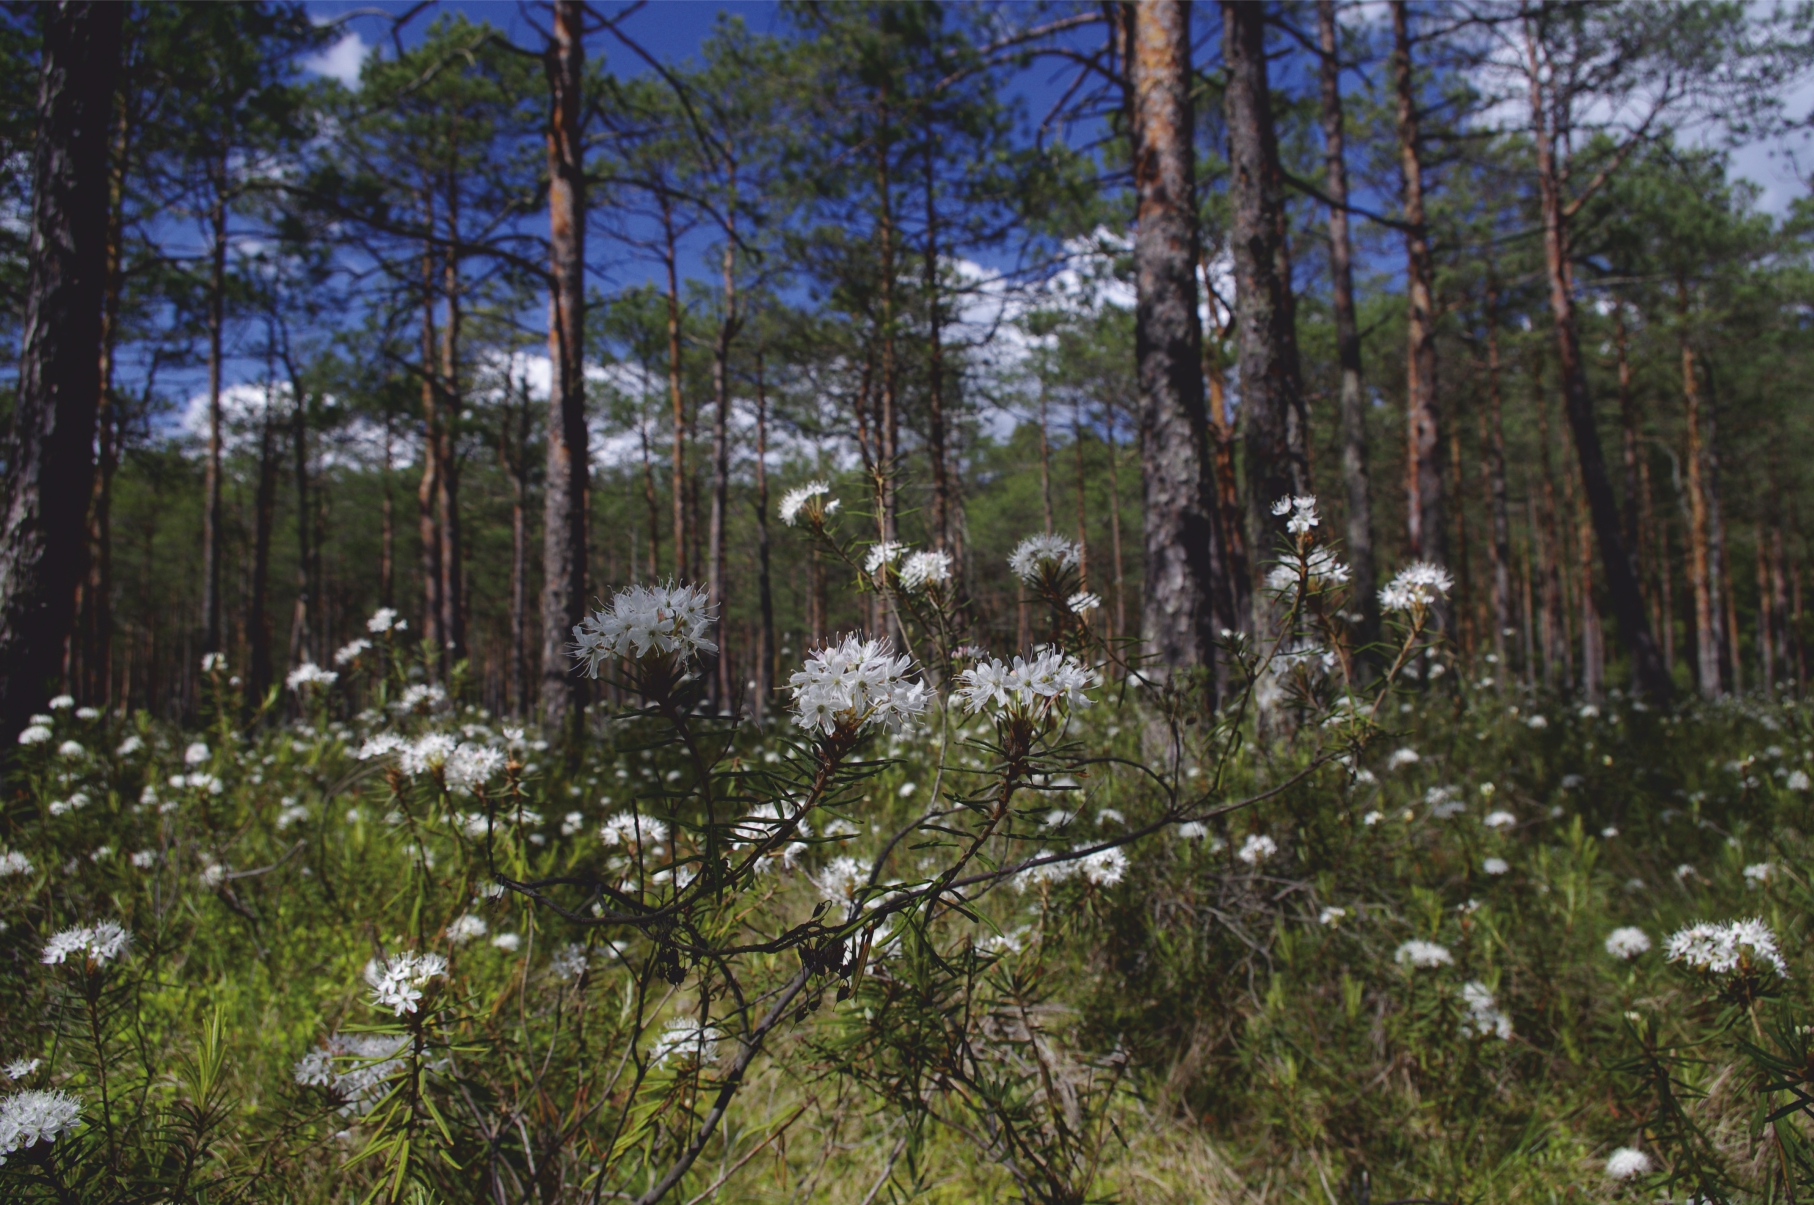 Zdjęcie przedstawia kontynentalny bór bagienny, na pierwszym planie widok na białe kwiaty na lesnej łące w oddali drzewa iglaste rosnące w lesie.